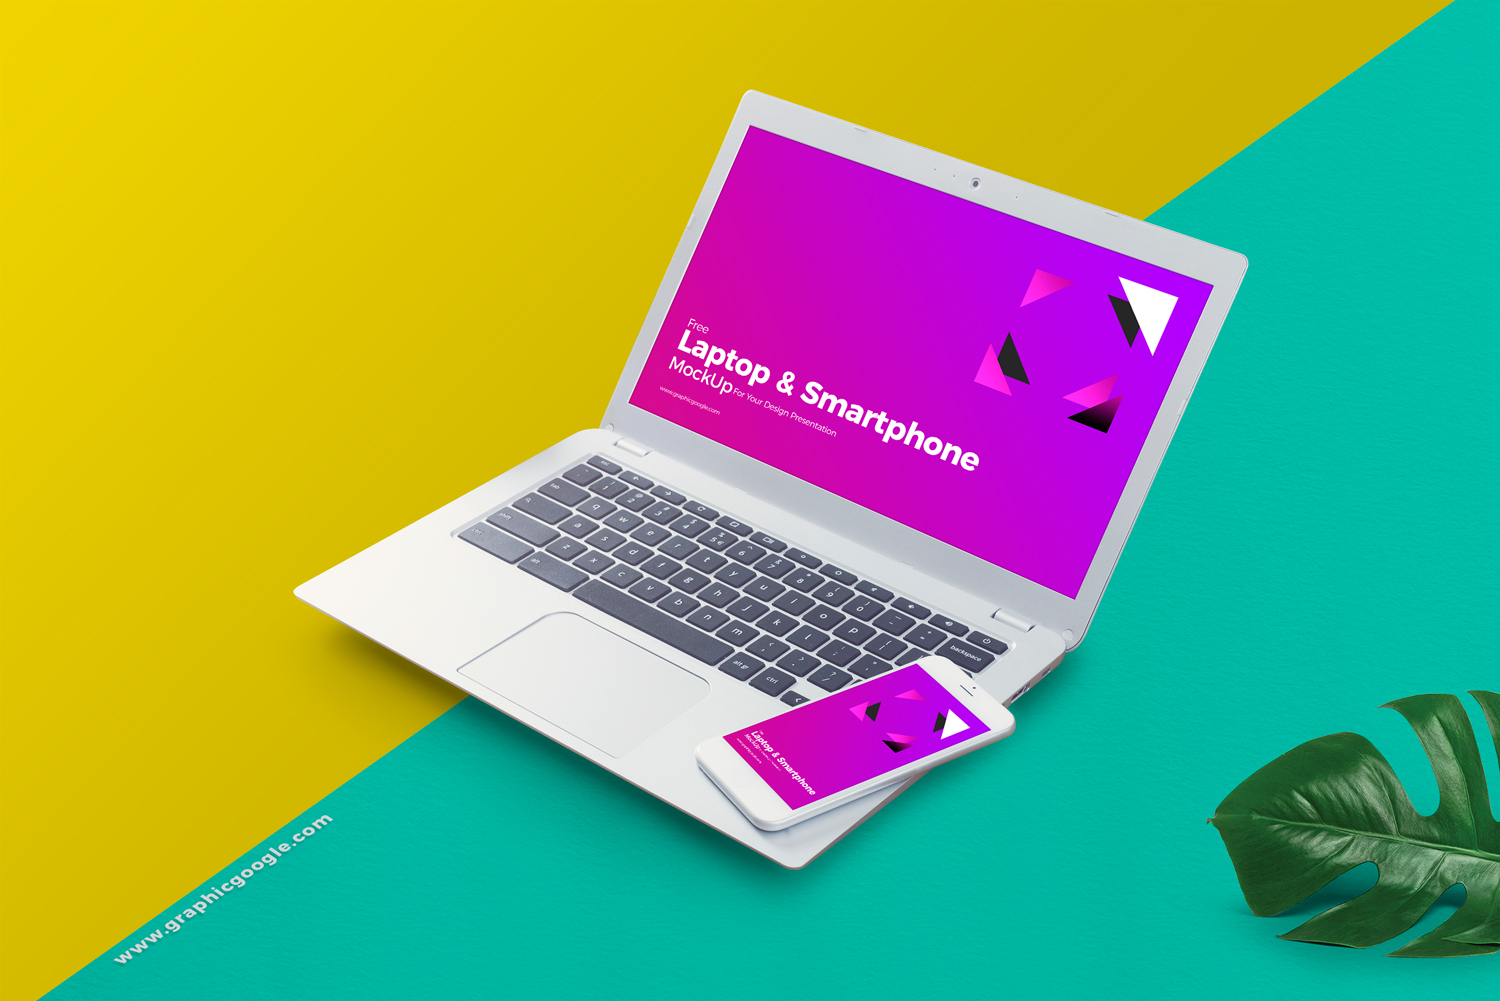 Free-Laptop-&-Smart-Phone-Mockup-For-Your-Design-Presentation